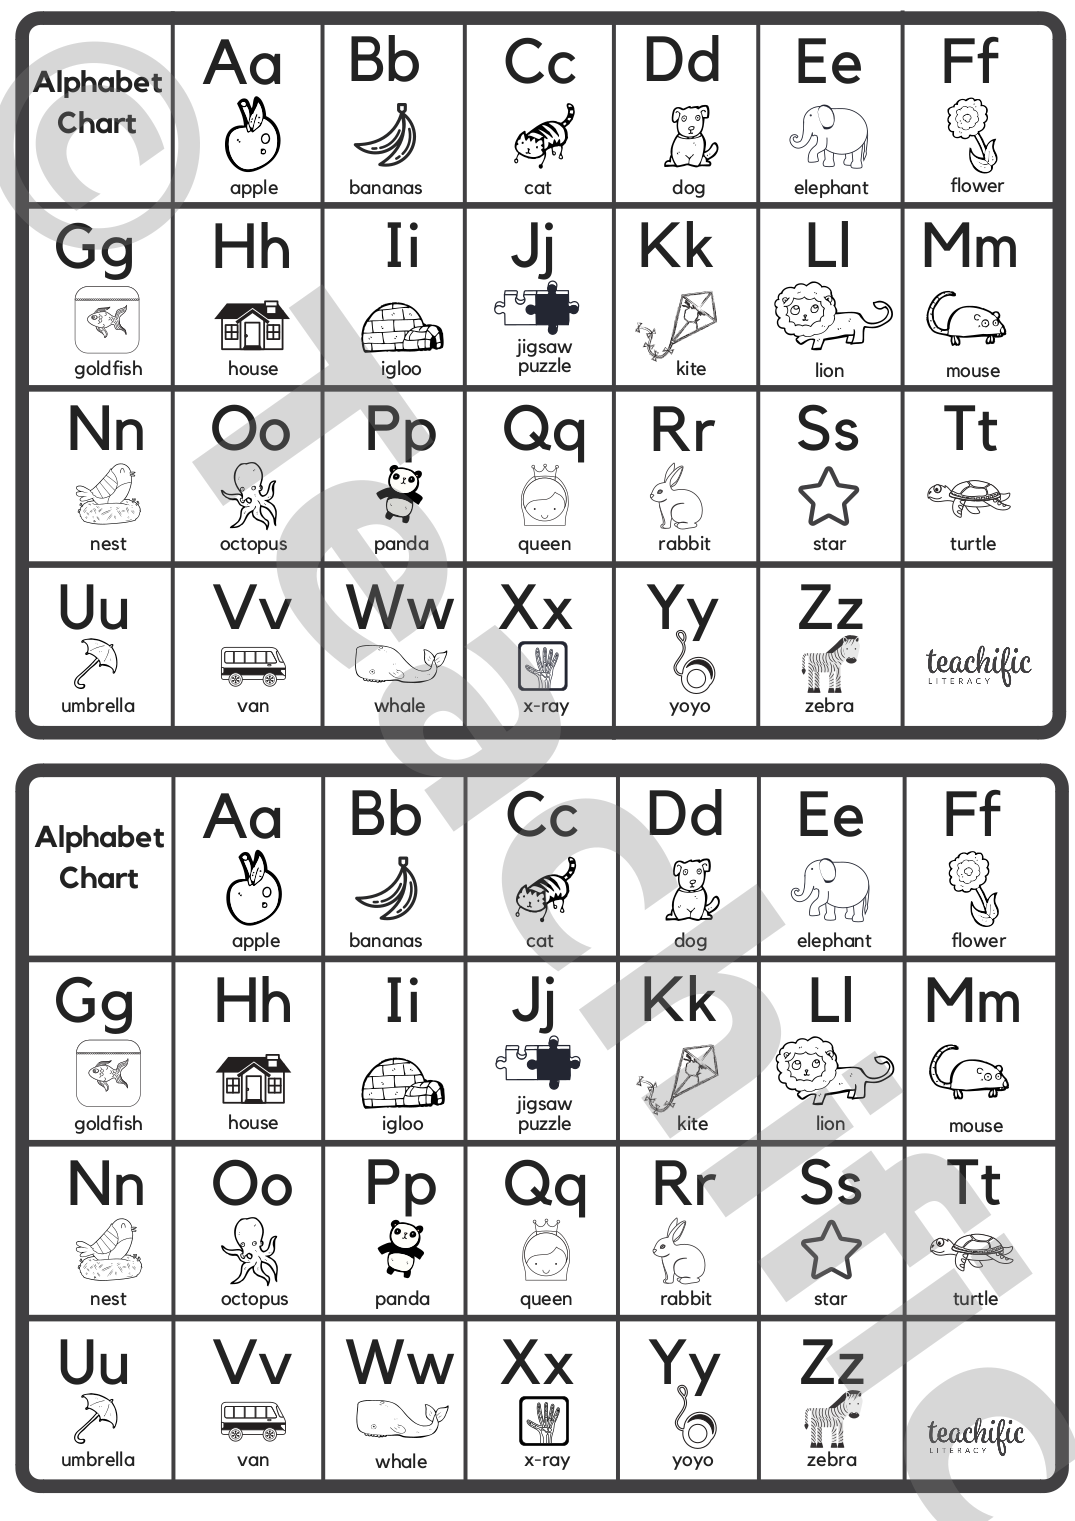 Alphabet Charts Illustrated Medium Teachific